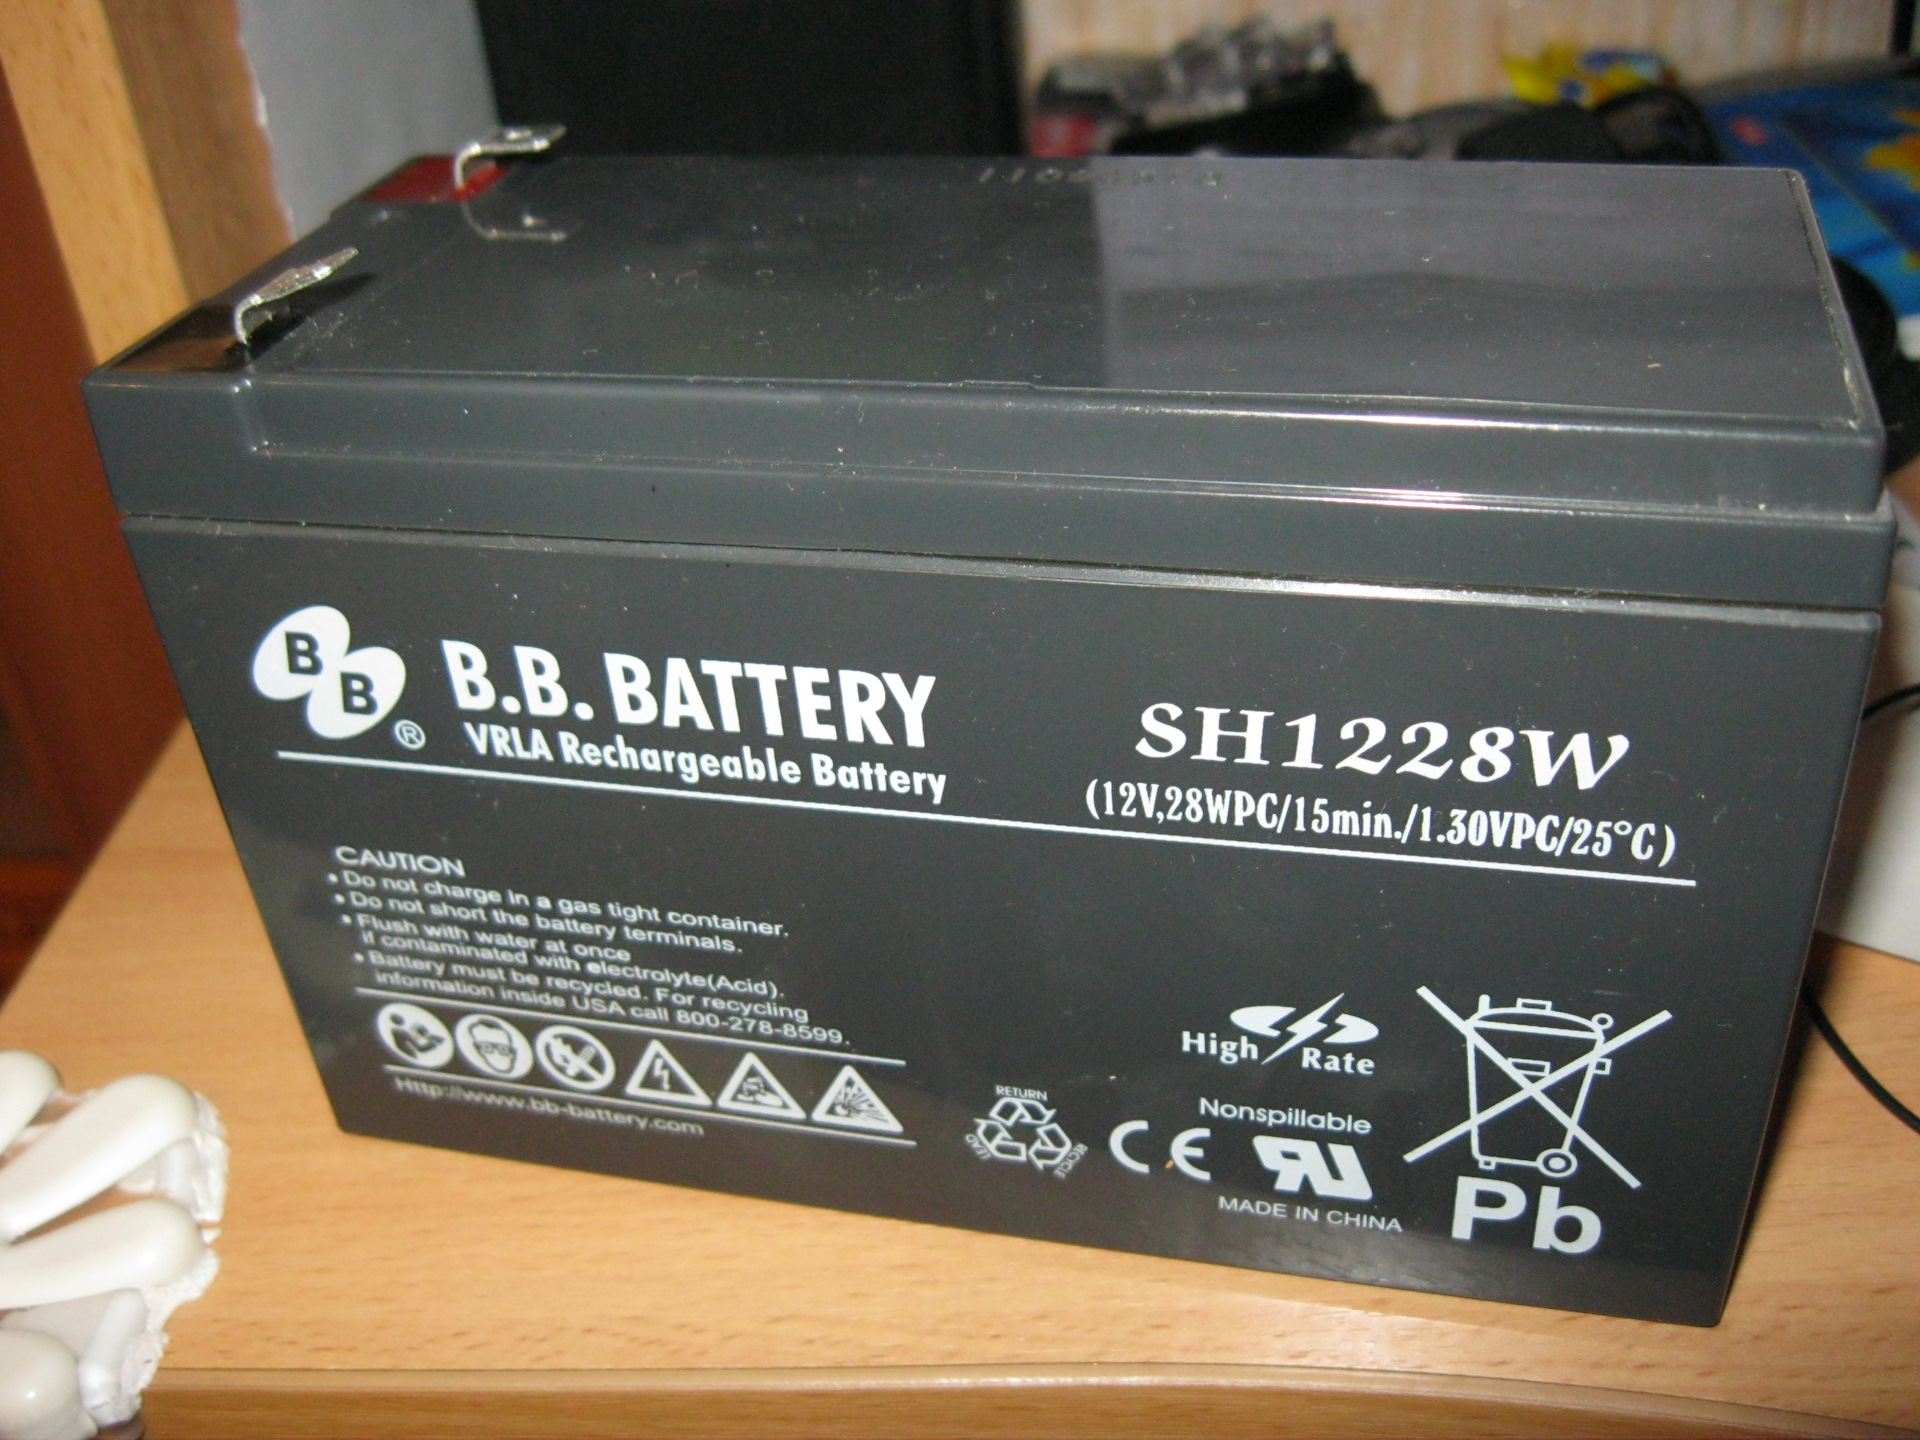 Что значит battery. Аккумулятор BB Battery sh1228w. Аккумулятор sh1228w 12v b.b.Battery 28wpc/15min/1.0VPC/25. Аккумулятор b.b. Battery sh1228w s. Sh1228w аккумулятор для ИБП.